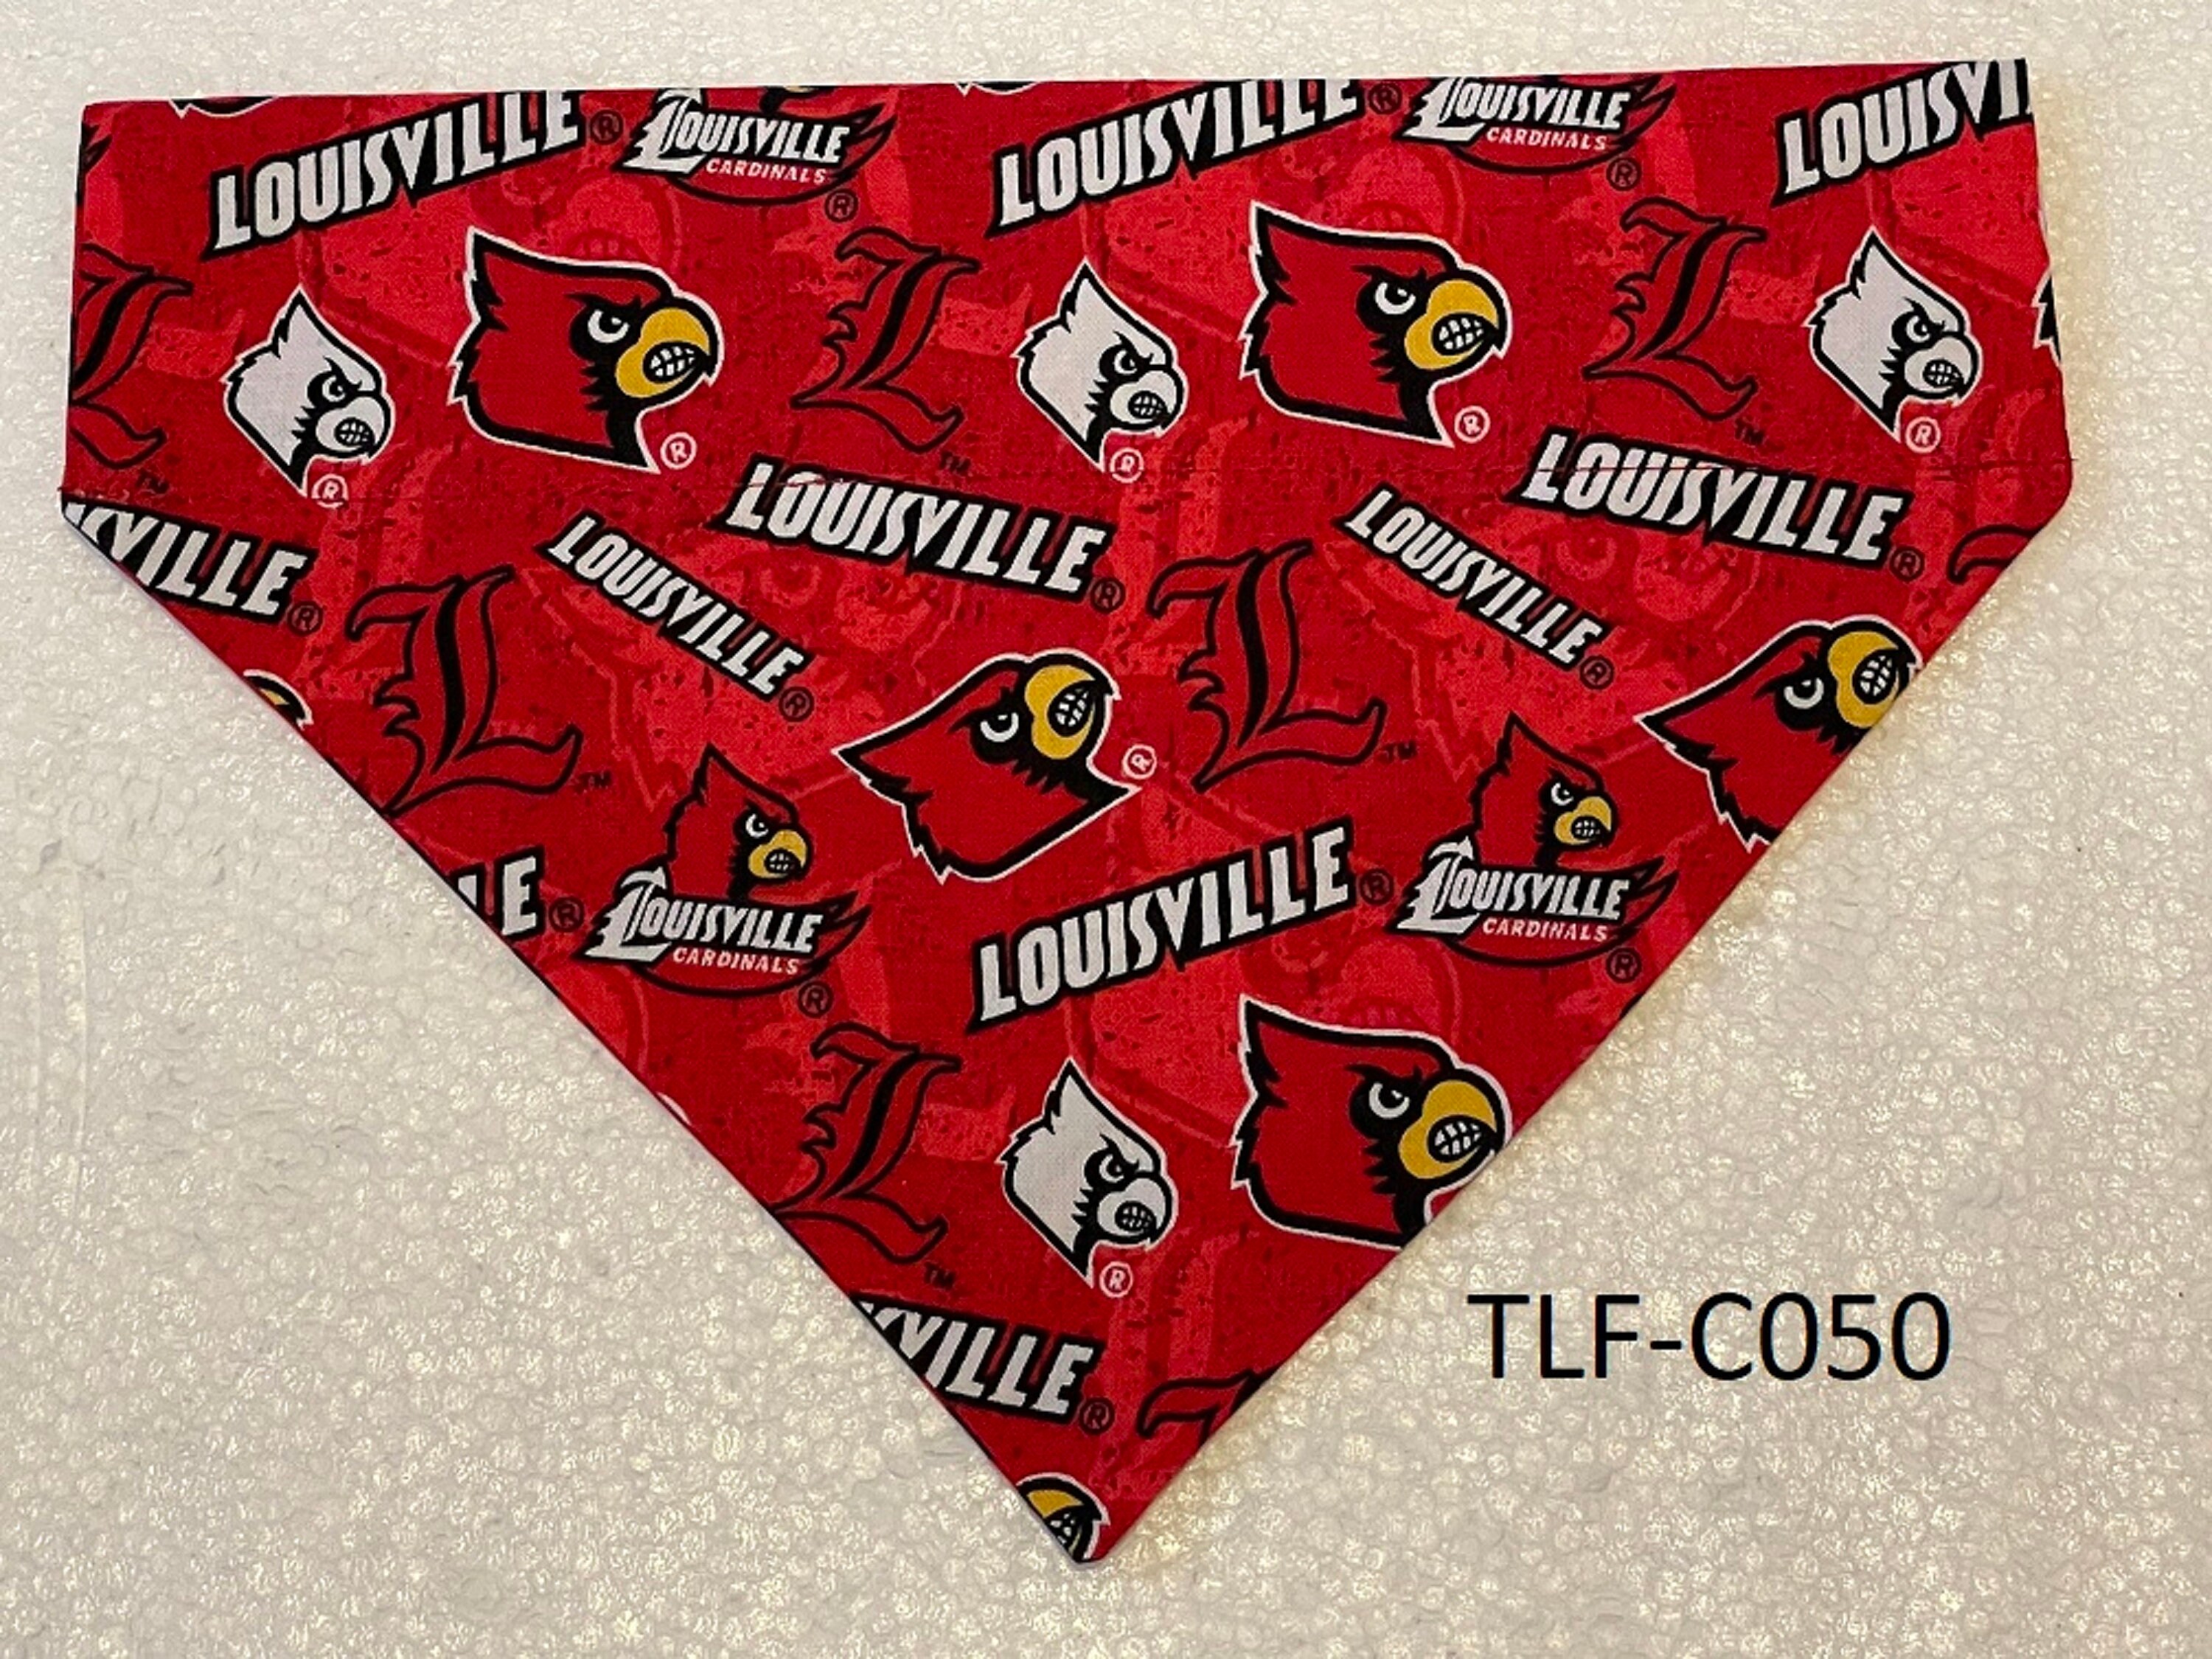 NCAA Louisville Cardinals Nylon Football Dog Toy